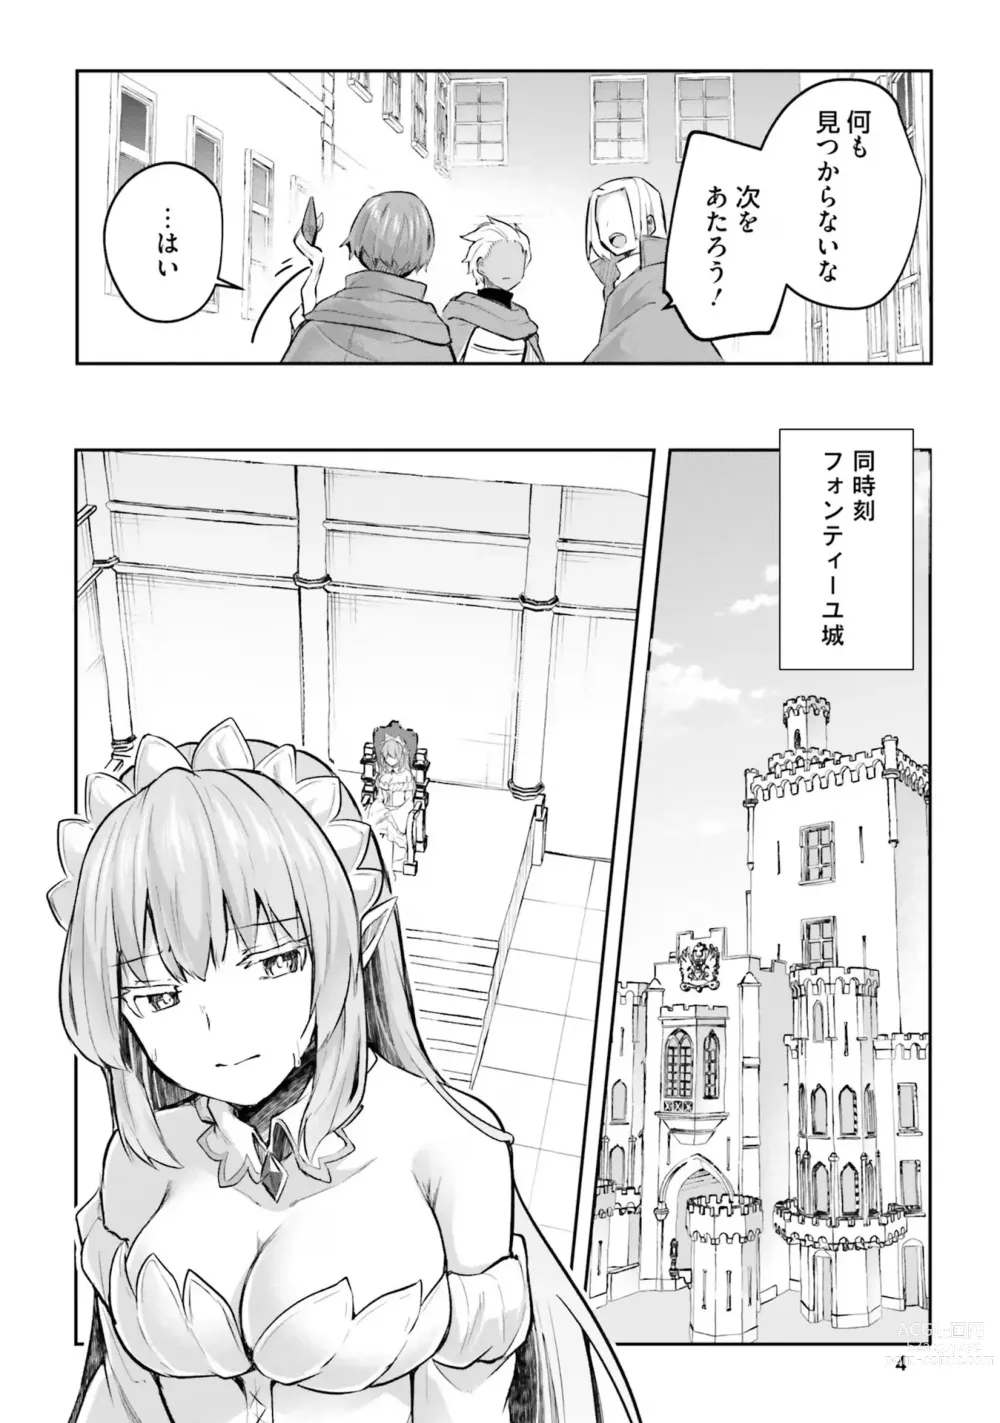 Page 6 of manga Inbi na Doukutsu no Sono Oku de 4